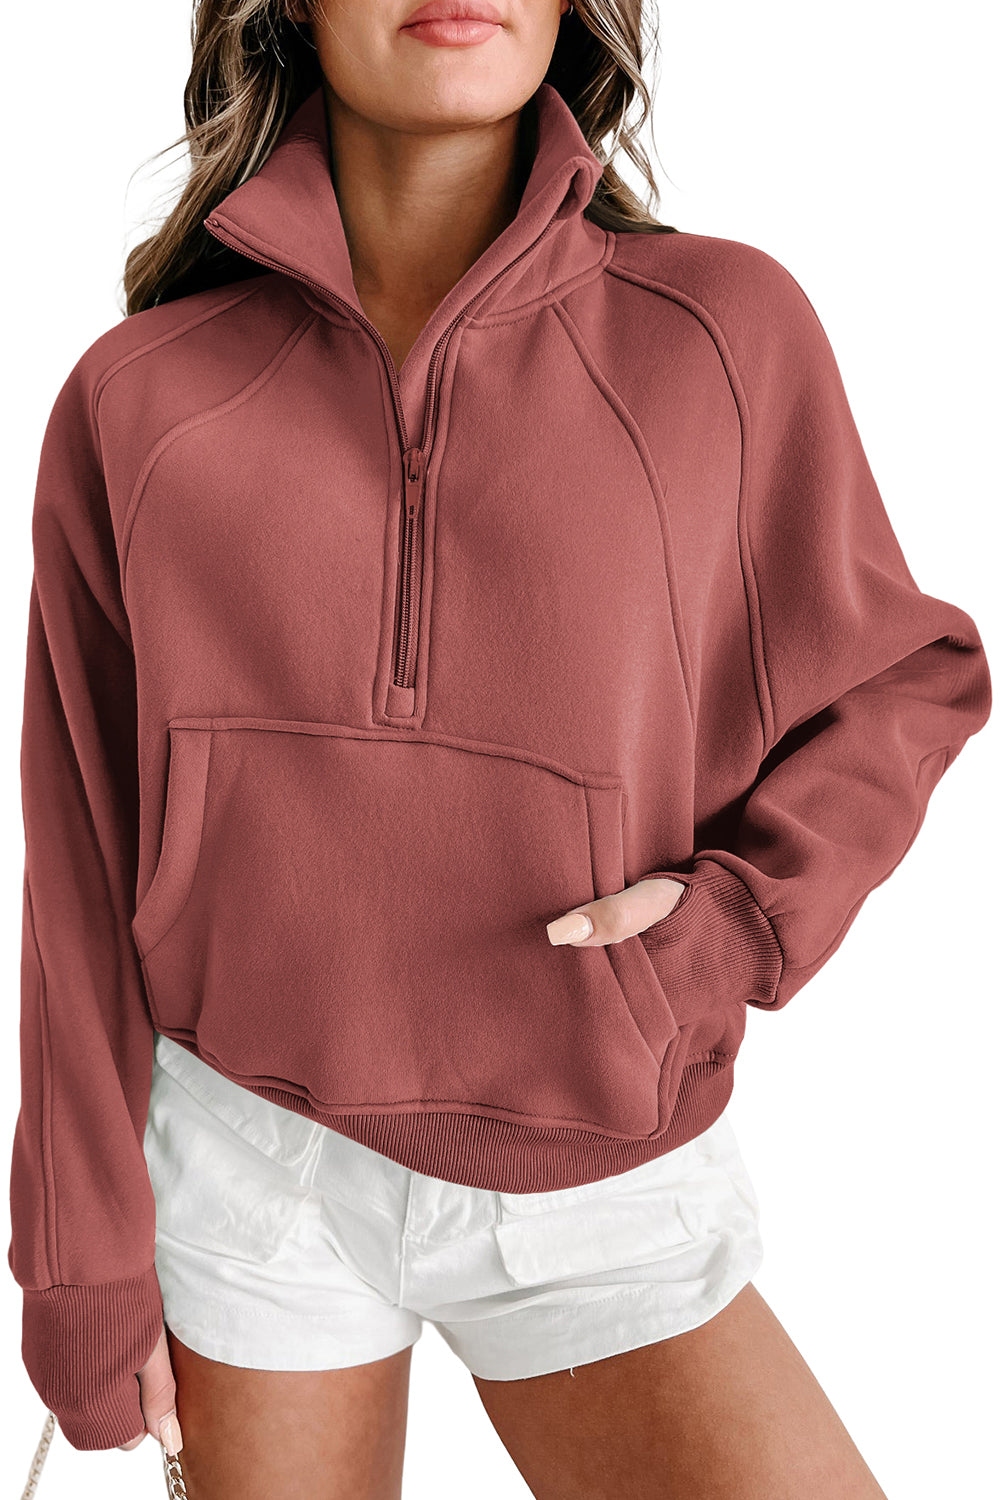 Brown Zip Up Stand Collar Thumbhole Sleeve Sweatshirt